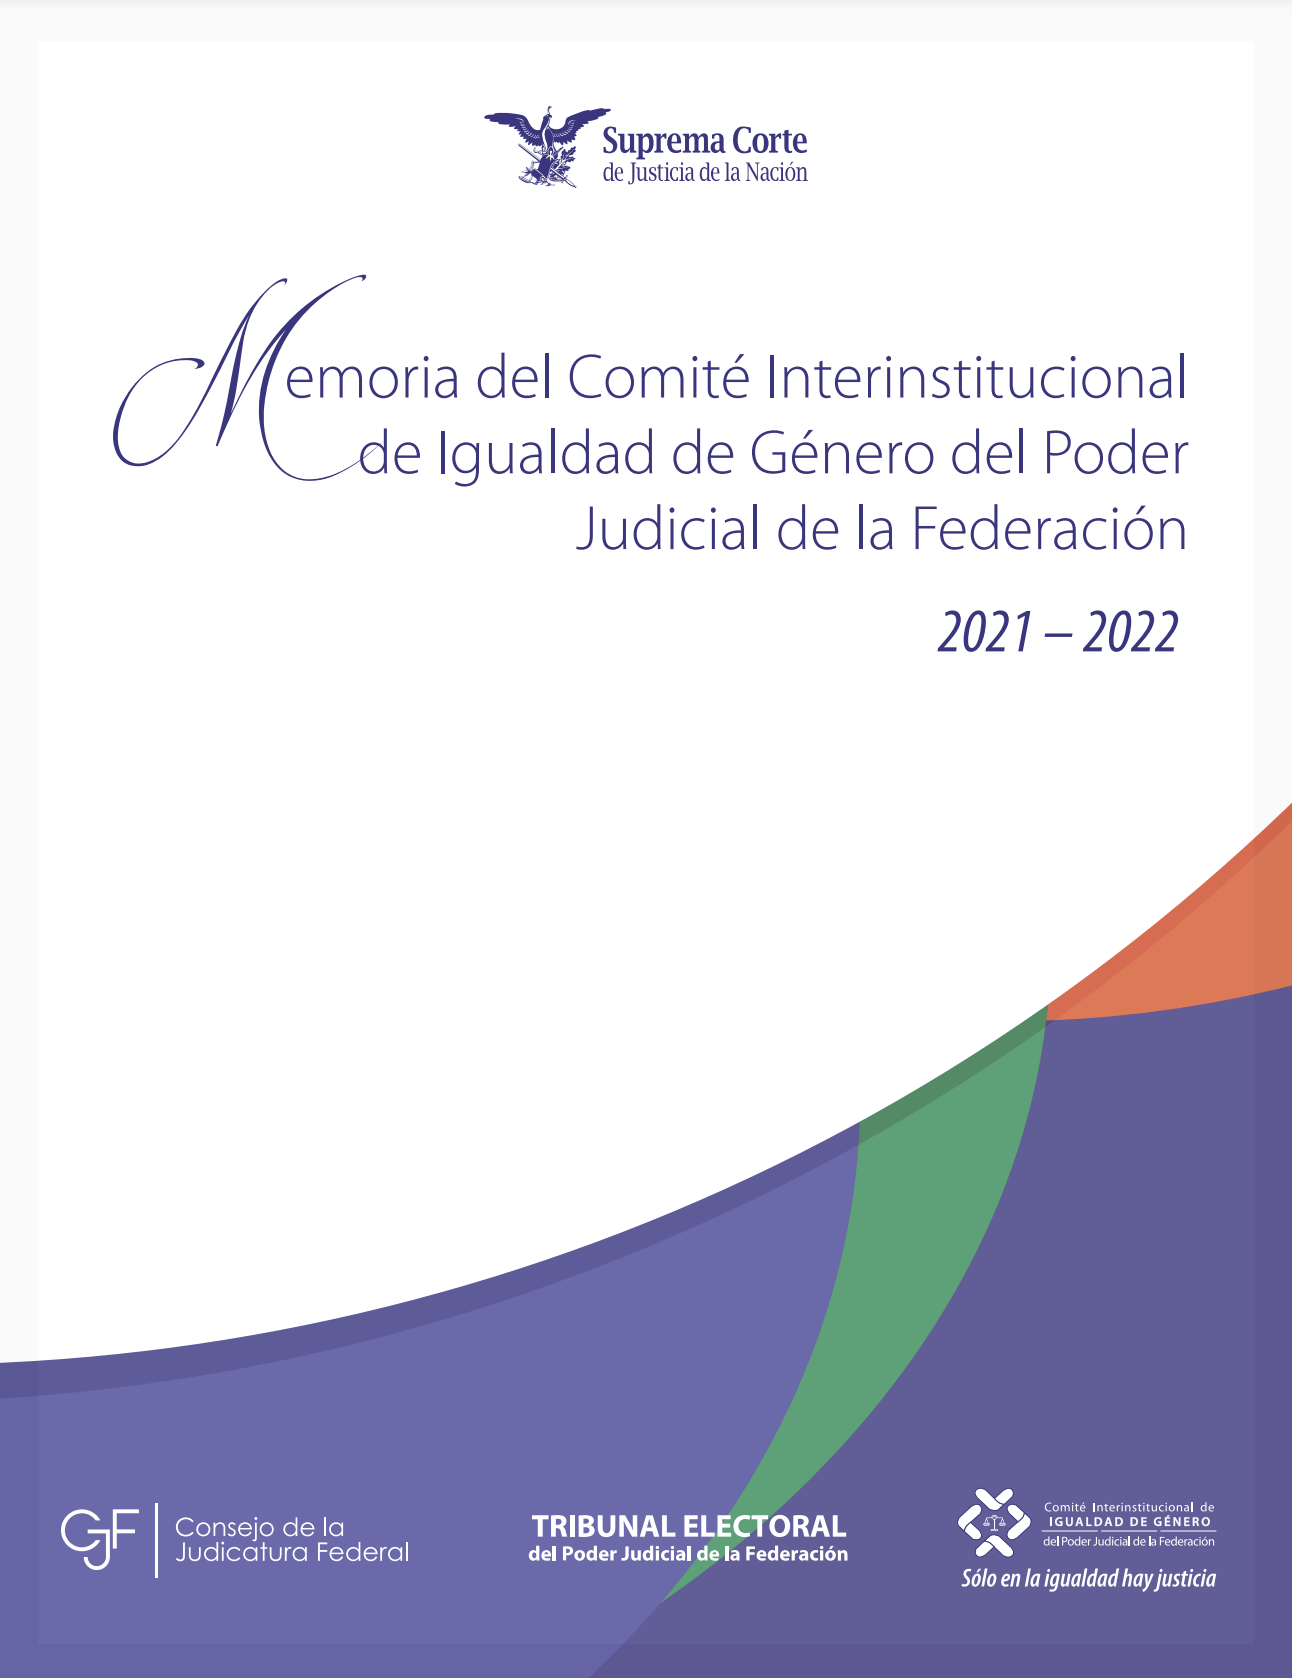 Memoria de Trabajo del Comité Interinstitucional de Igualdad de Género del Poder Judicial de la Federación 2021-2022